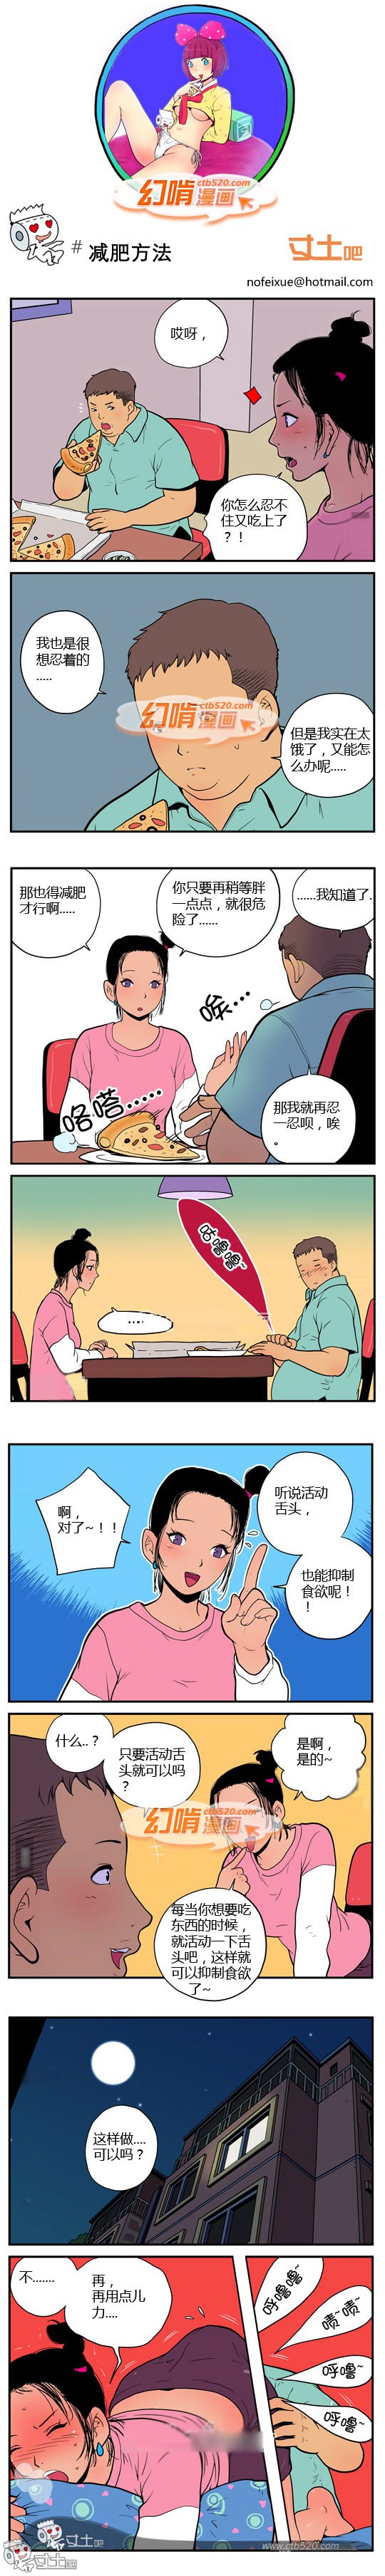 幻啃漫画减肥方法